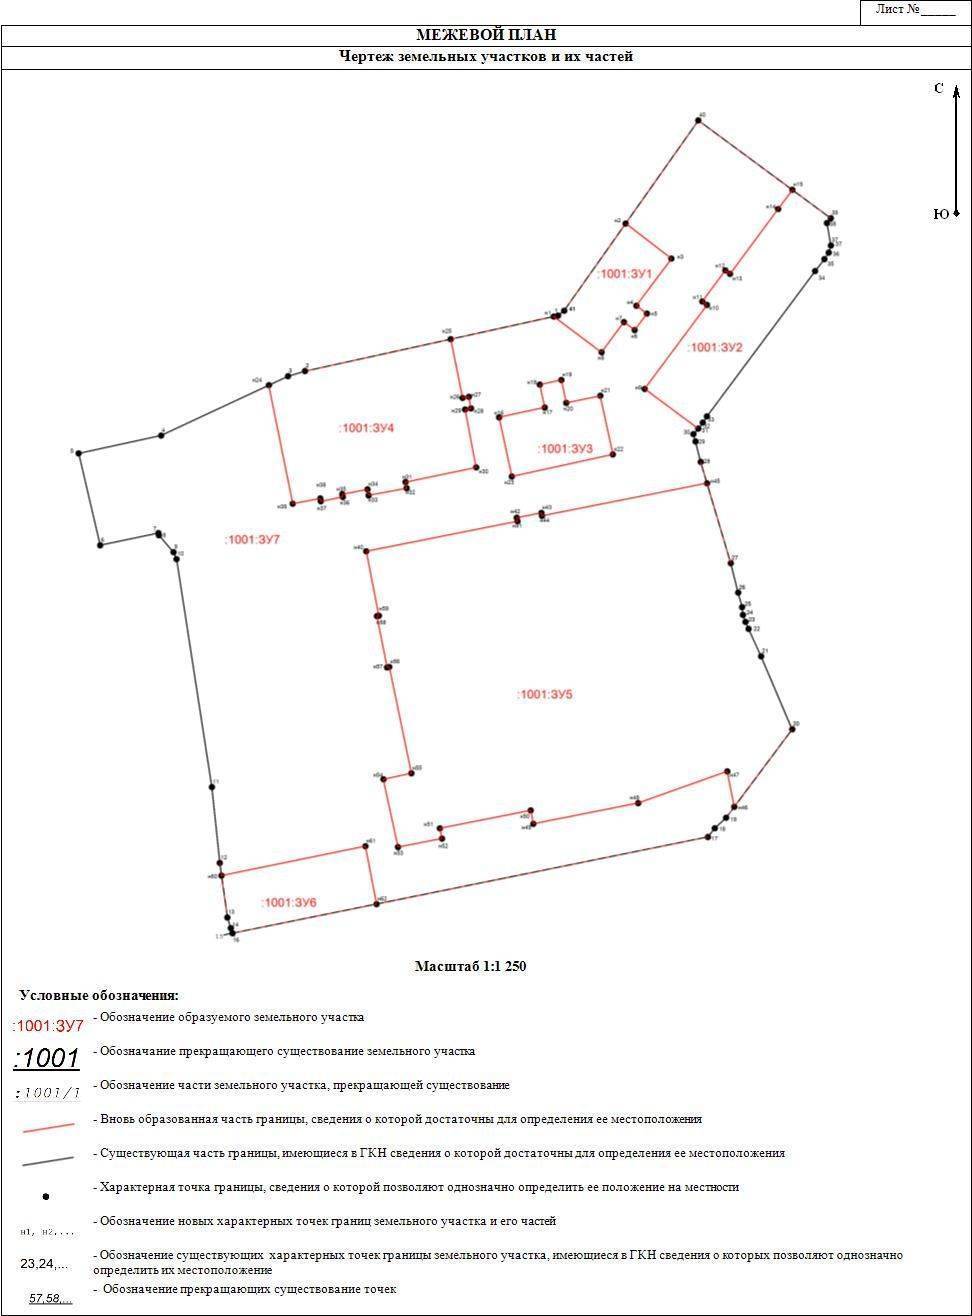 Межевой план земельного участка – что такое и как выглядит схема межевания земли